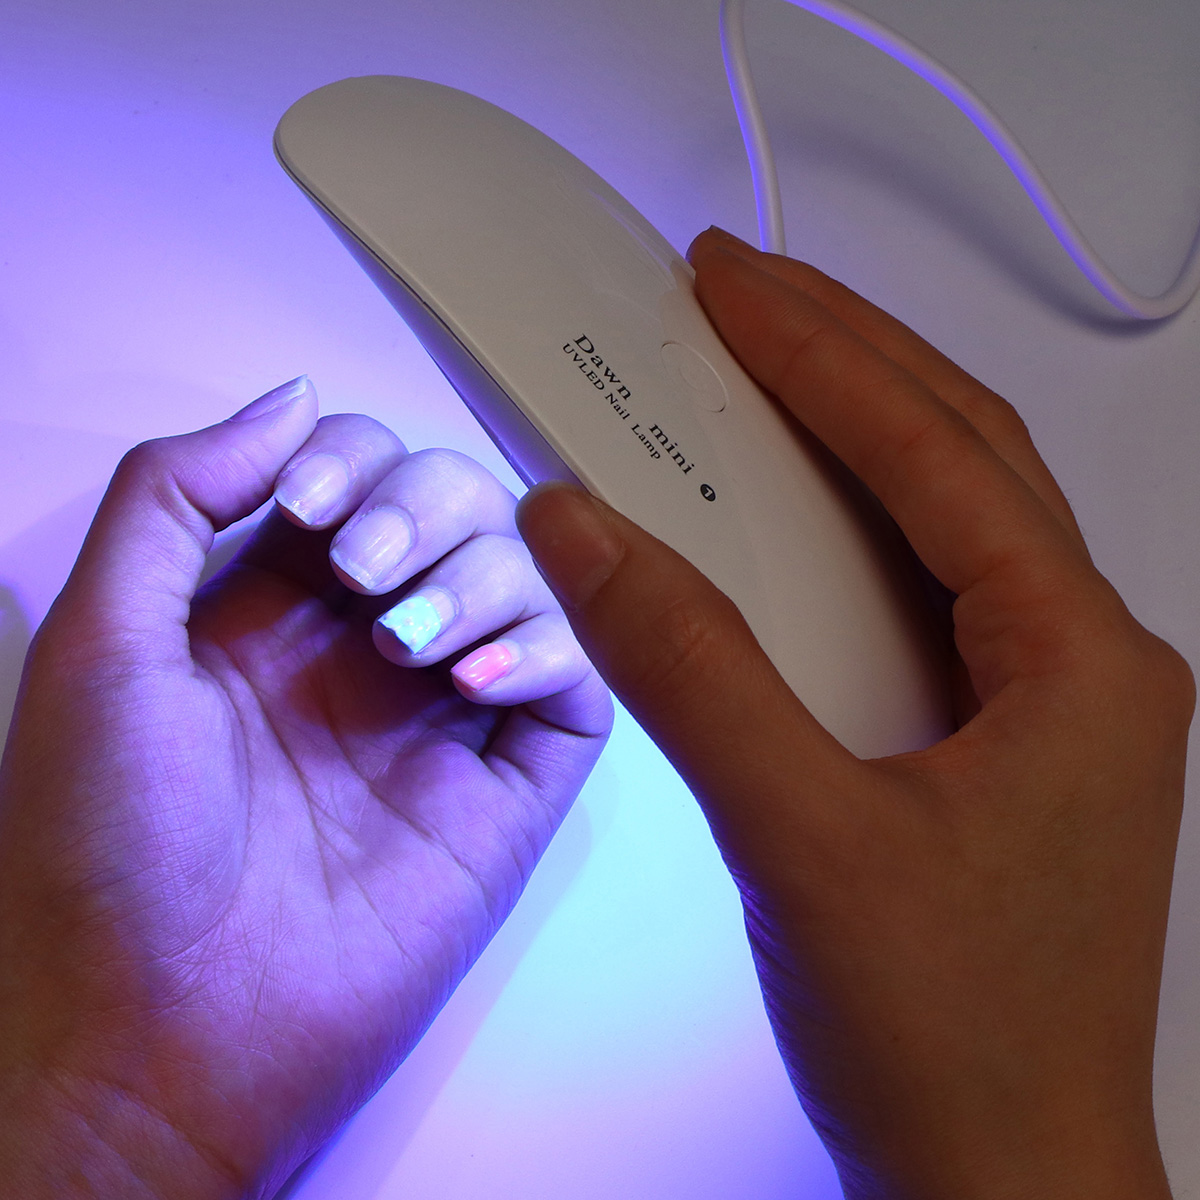 USB Mini UV LED Nail Dryer Lamp